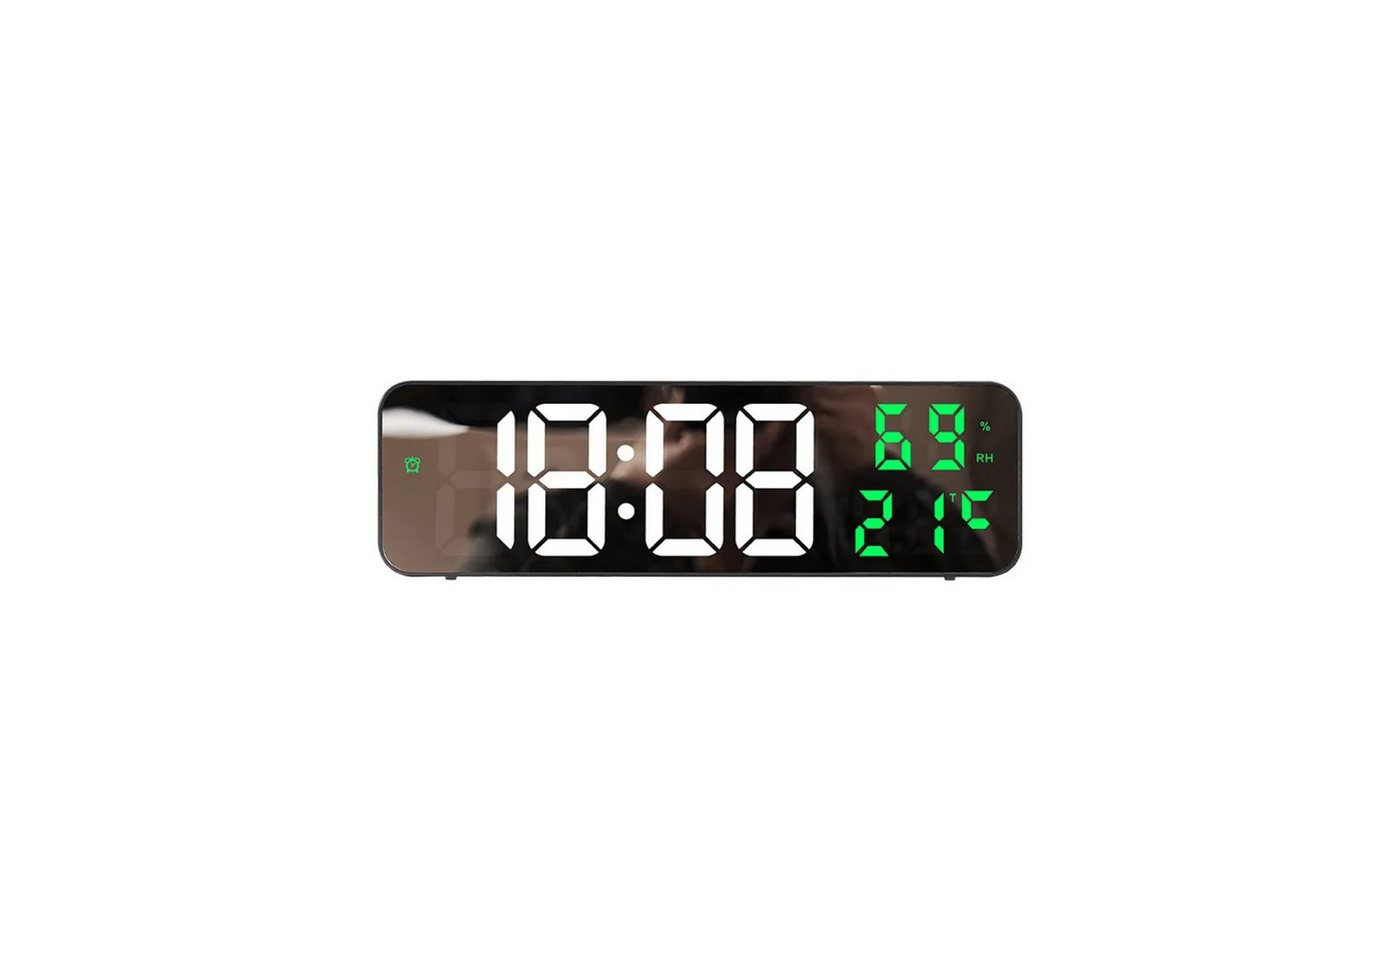 COFI 1453 Funktischuhr Digitale LED-Uhr mit Temperatur und Datum Anzeige in Grün von COFI 1453